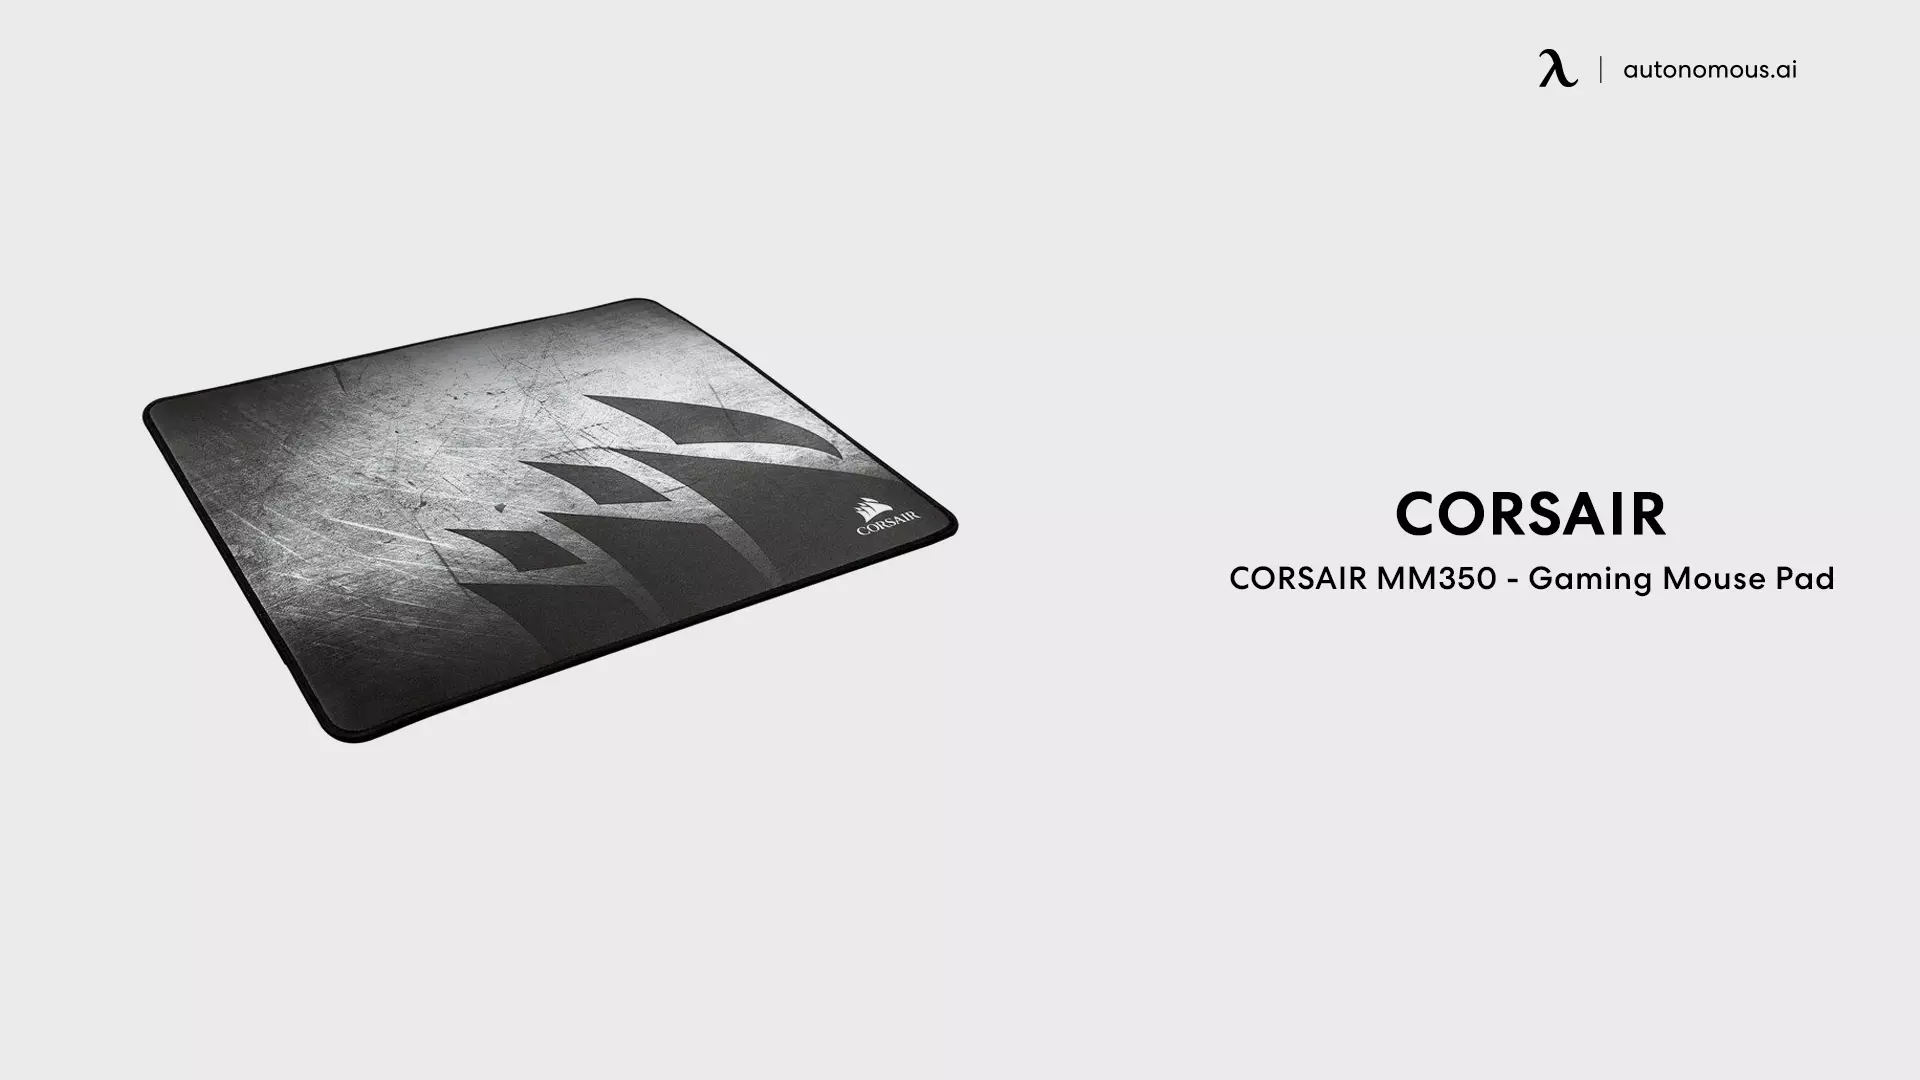 CORSAIR MM350 - Gaming Mouse Pad